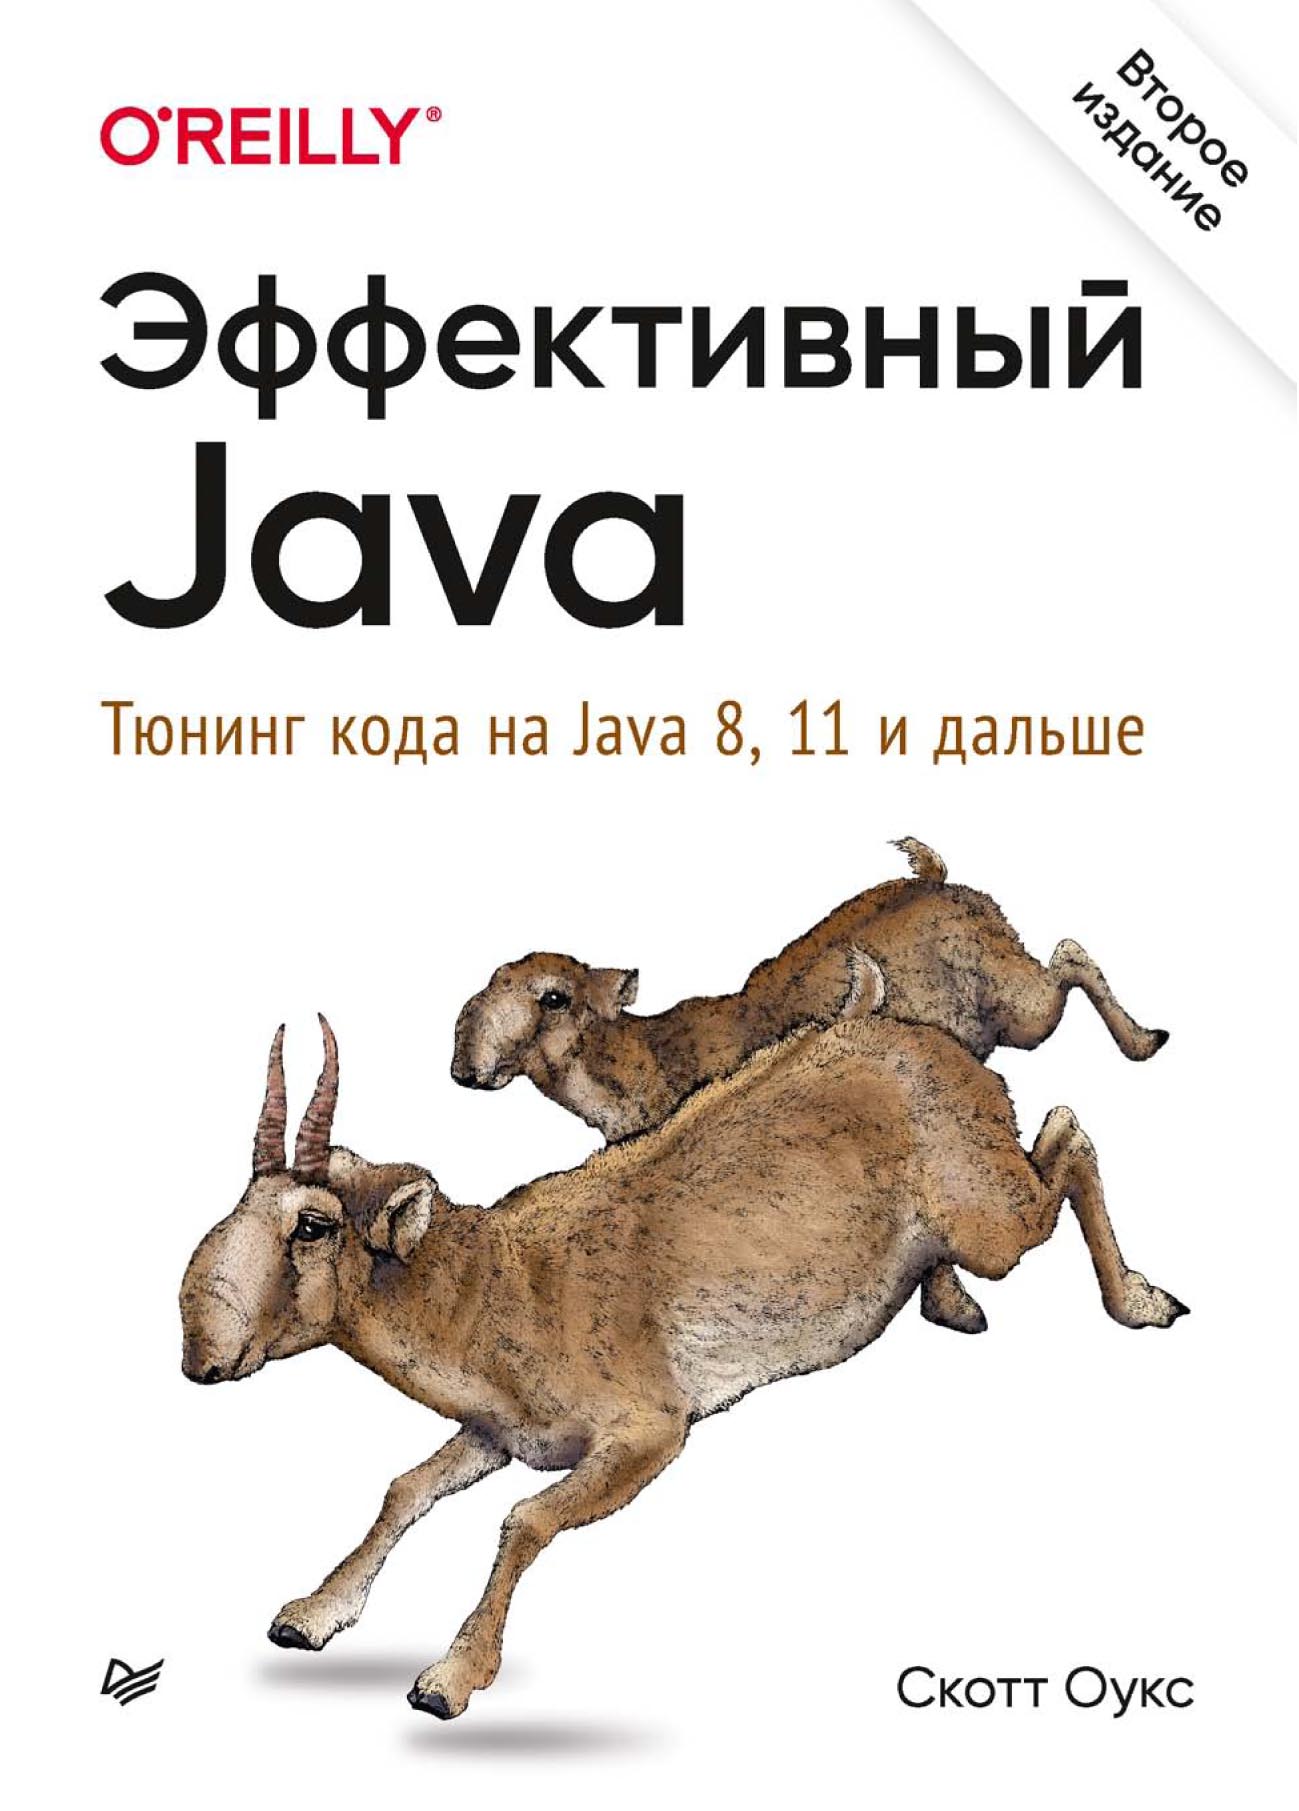 Книга Бестселлеры O’Reilly (Питер) Эффективный Java. Тюнинг кода на Java 8, 11 и дальше (pdf+epub) созданная Скотт Оукс, Е. А. Матвеев, И. Сигайлюк может относится к жанру программирование. Стоимость электронной книги Эффективный Java. Тюнинг кода на Java 8, 11 и дальше (pdf+epub) с идентификатором 64482657 составляет 599.00 руб.